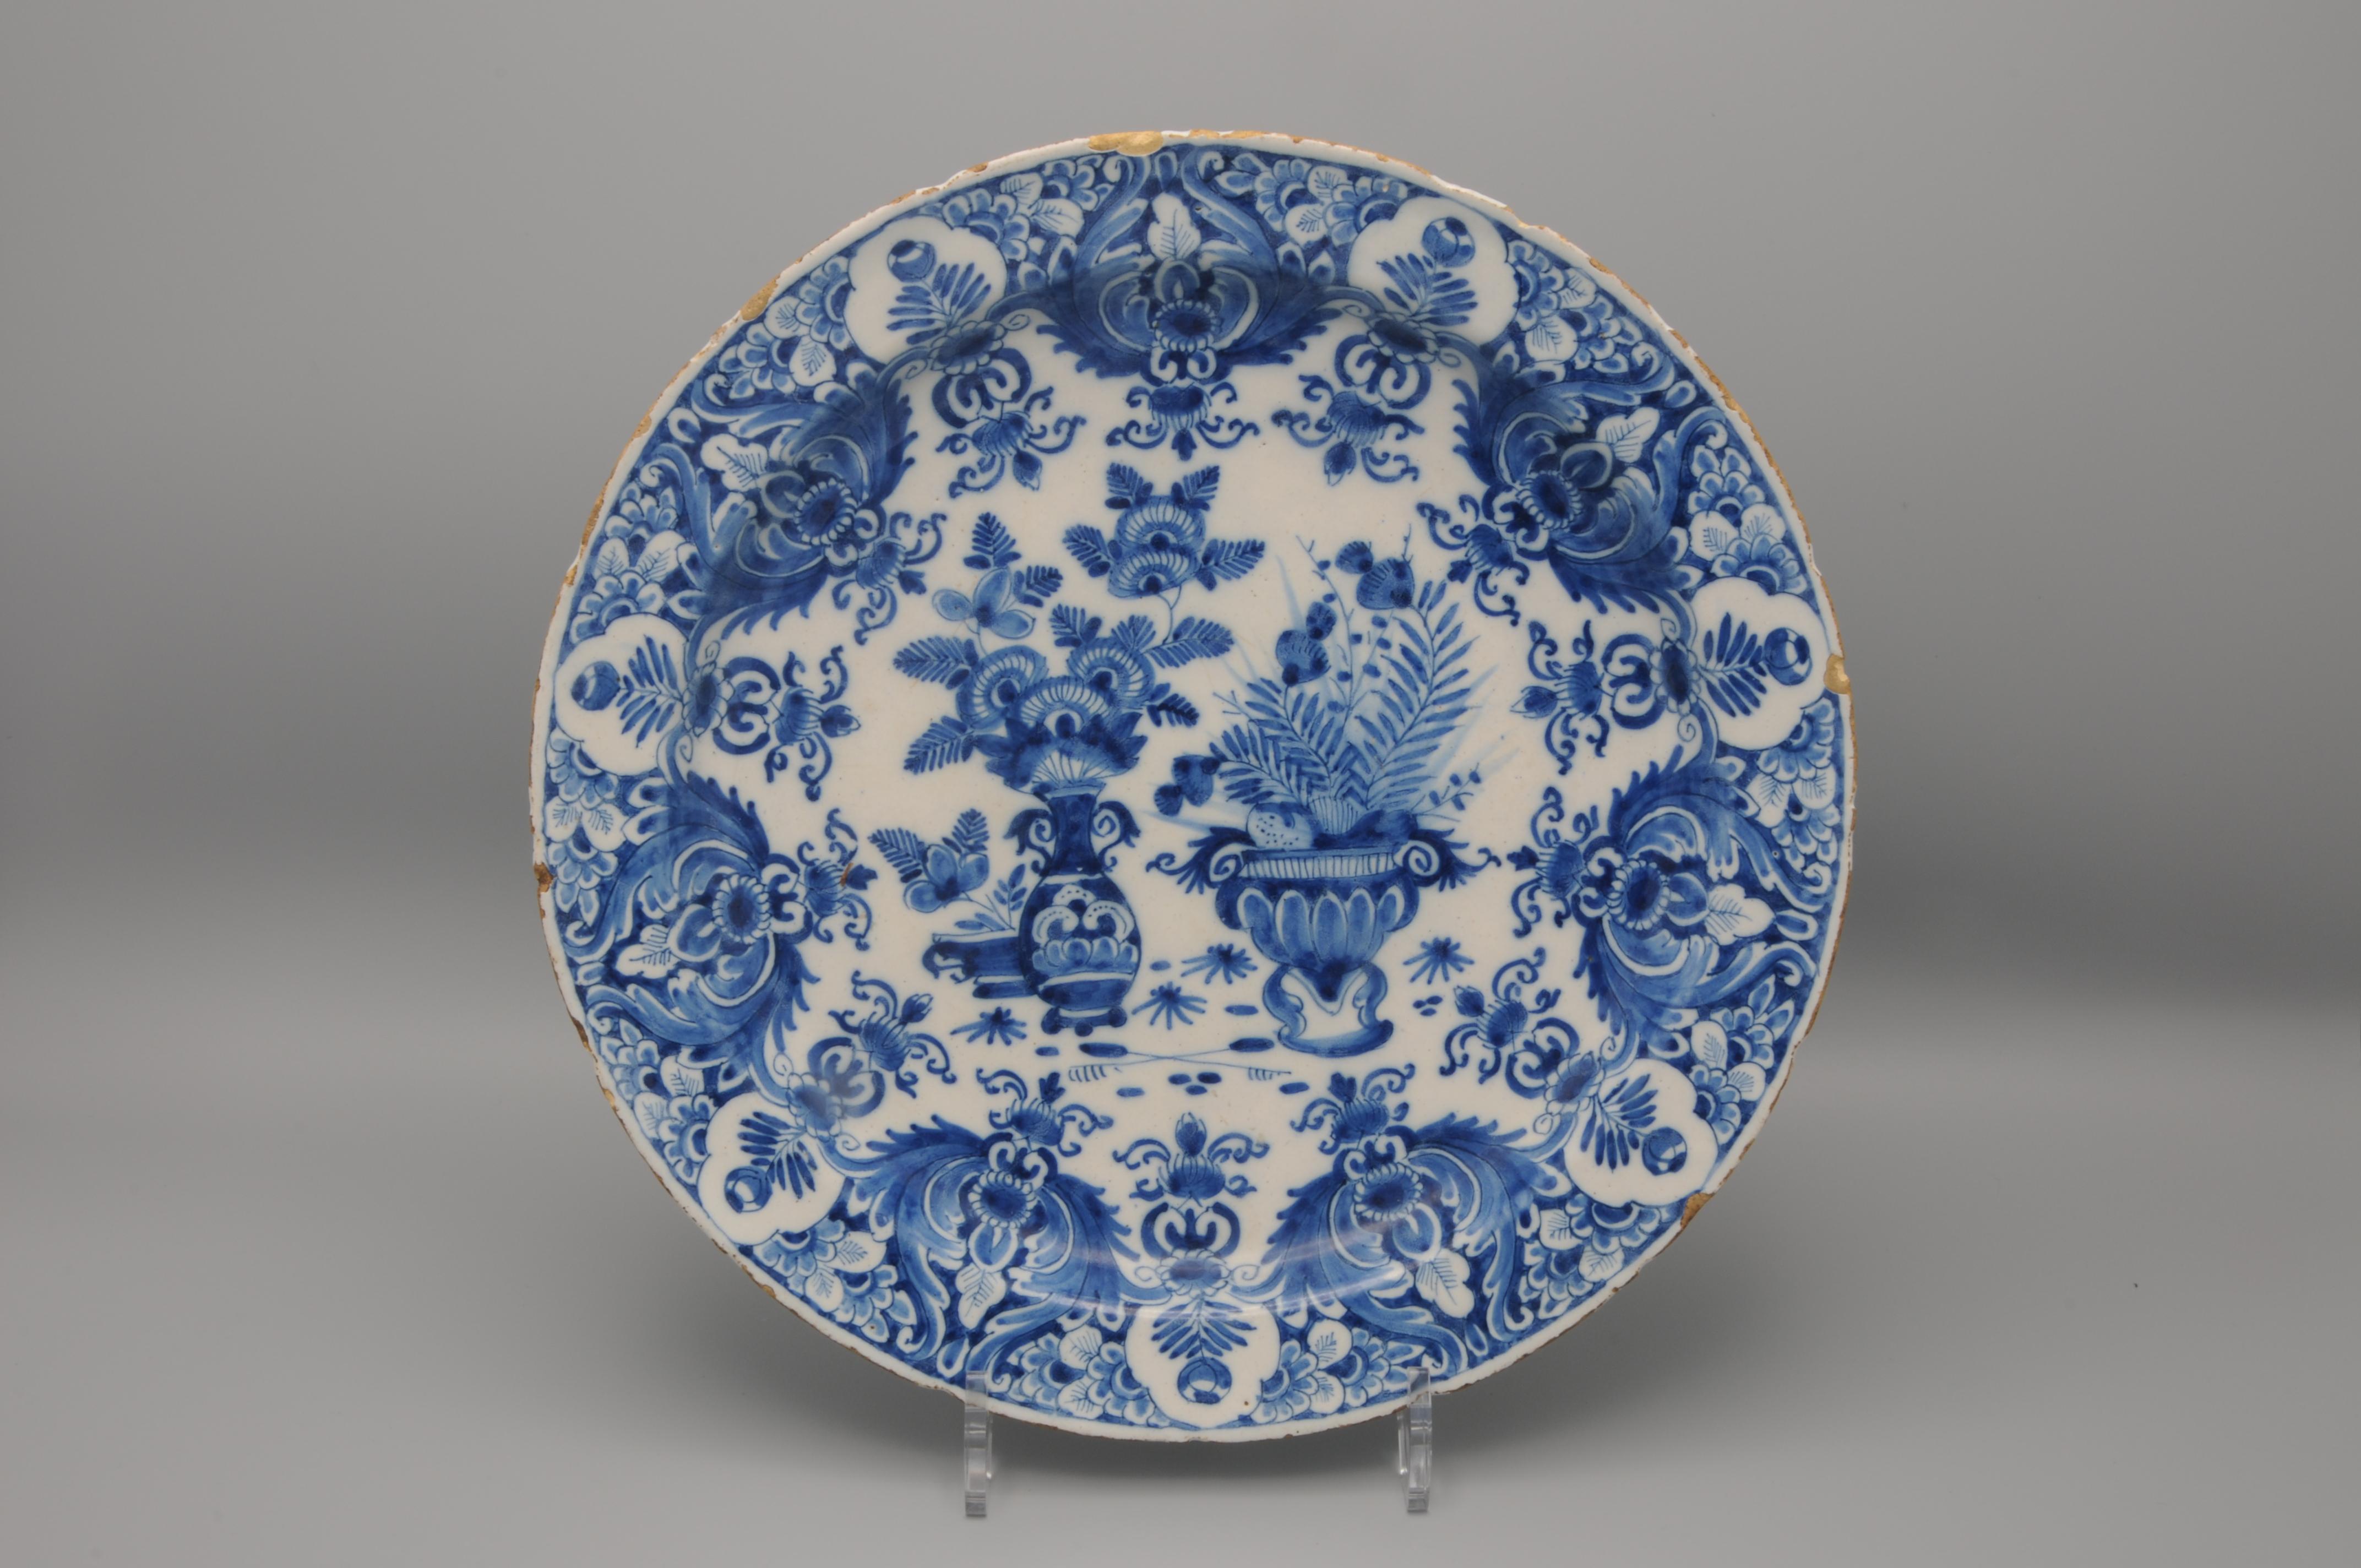 Rare assiette en faïence bleue du début du 18e siècle à décor chinois de trois paniers de fleurs. Magnifique bordure décorée de riches feuillages, de fleurs et de rinceaux. 

Marqué 